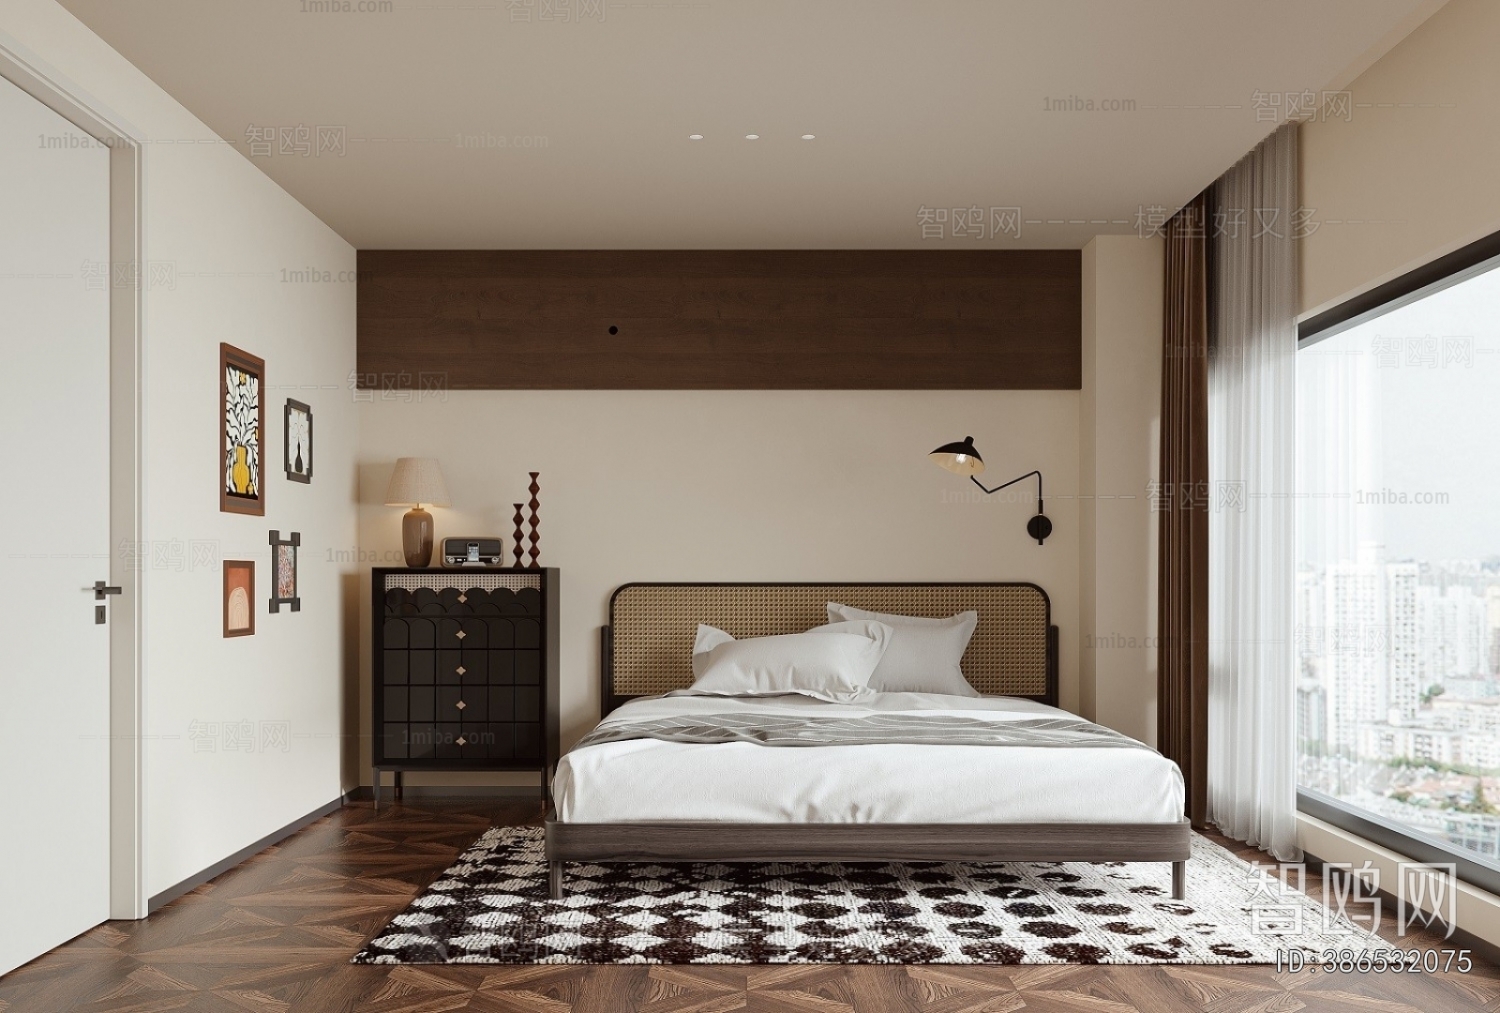 Retro Style Bedroom